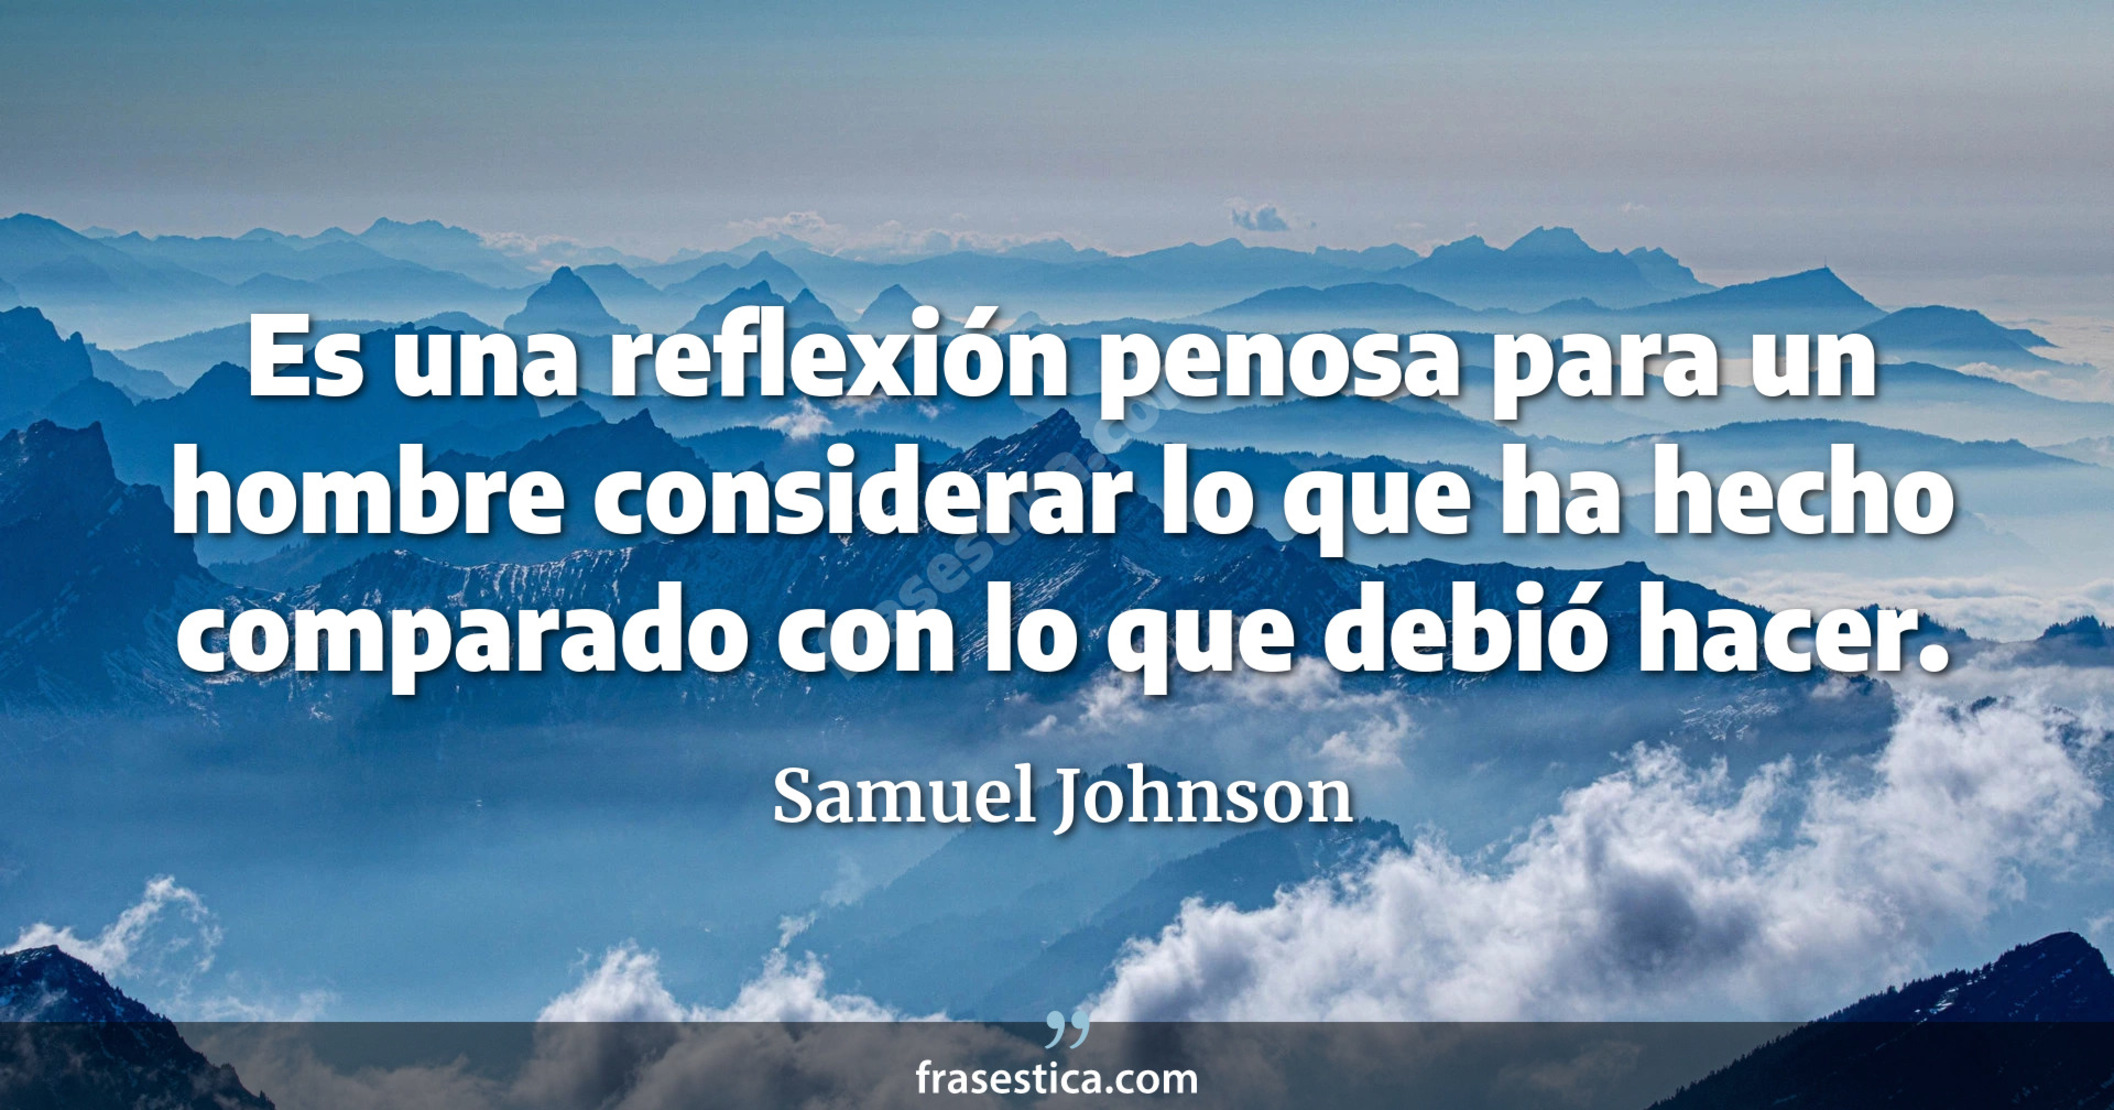 Es una reflexión penosa para un hombre considerar lo que ha hecho comparado con lo que debió hacer. - Samuel Johnson